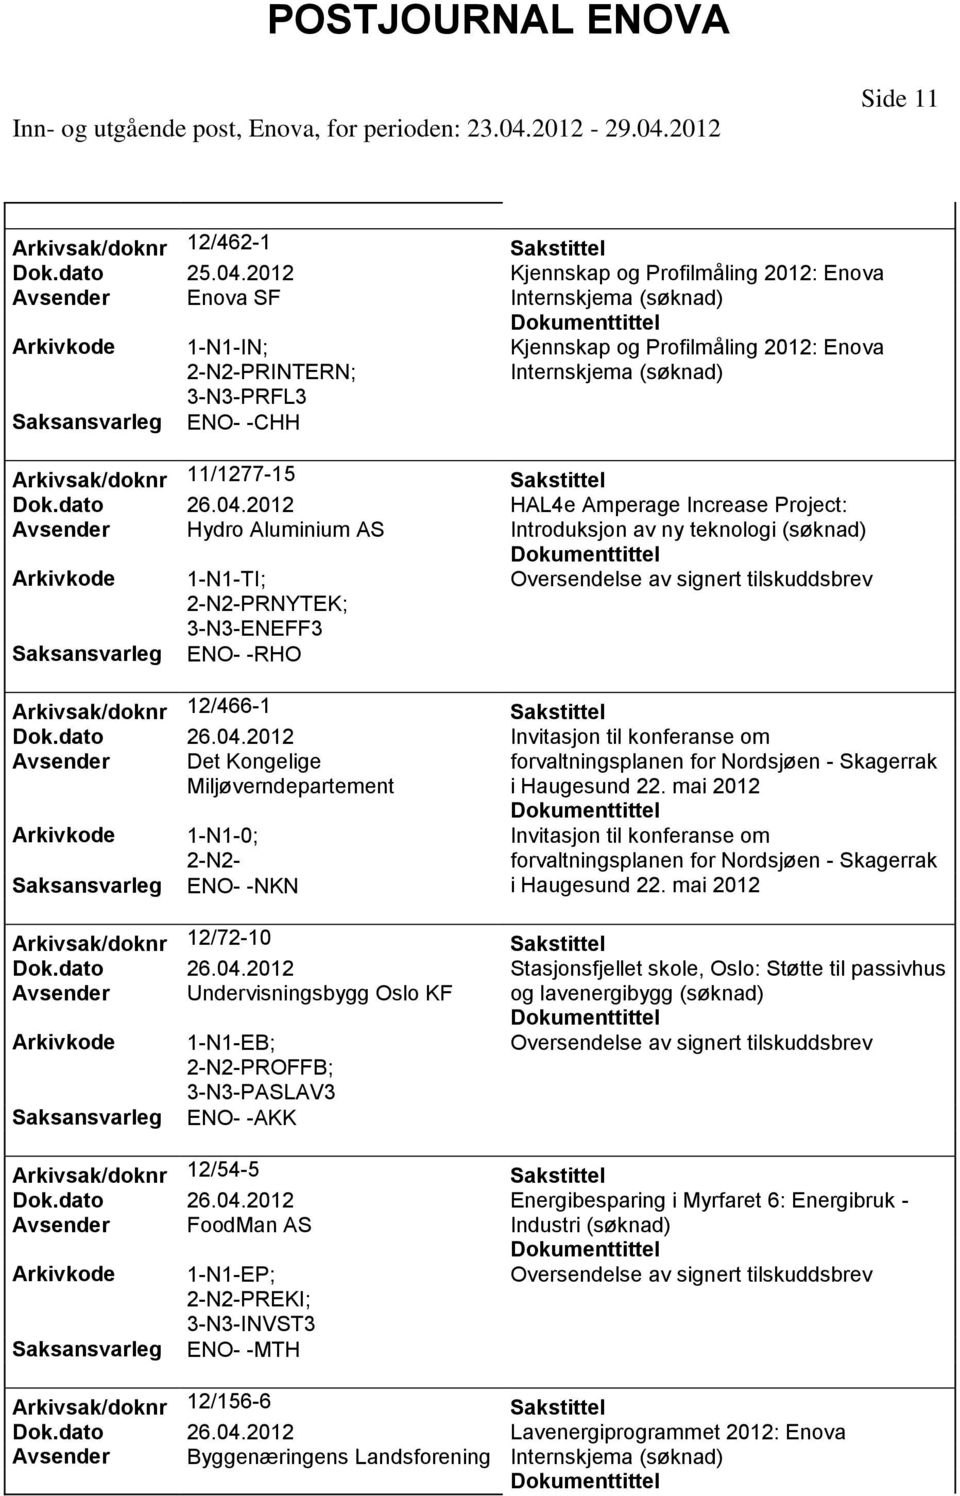 mai 1-N1-0; 2-N2- ENO- -NKN Invitasjon til konferanse om forvaltningsplanen for Nordsjøen - Skagerrak i Haugesund 22. mai Arkivsak/doknr 12/72-10 Dok.dato 26.04.